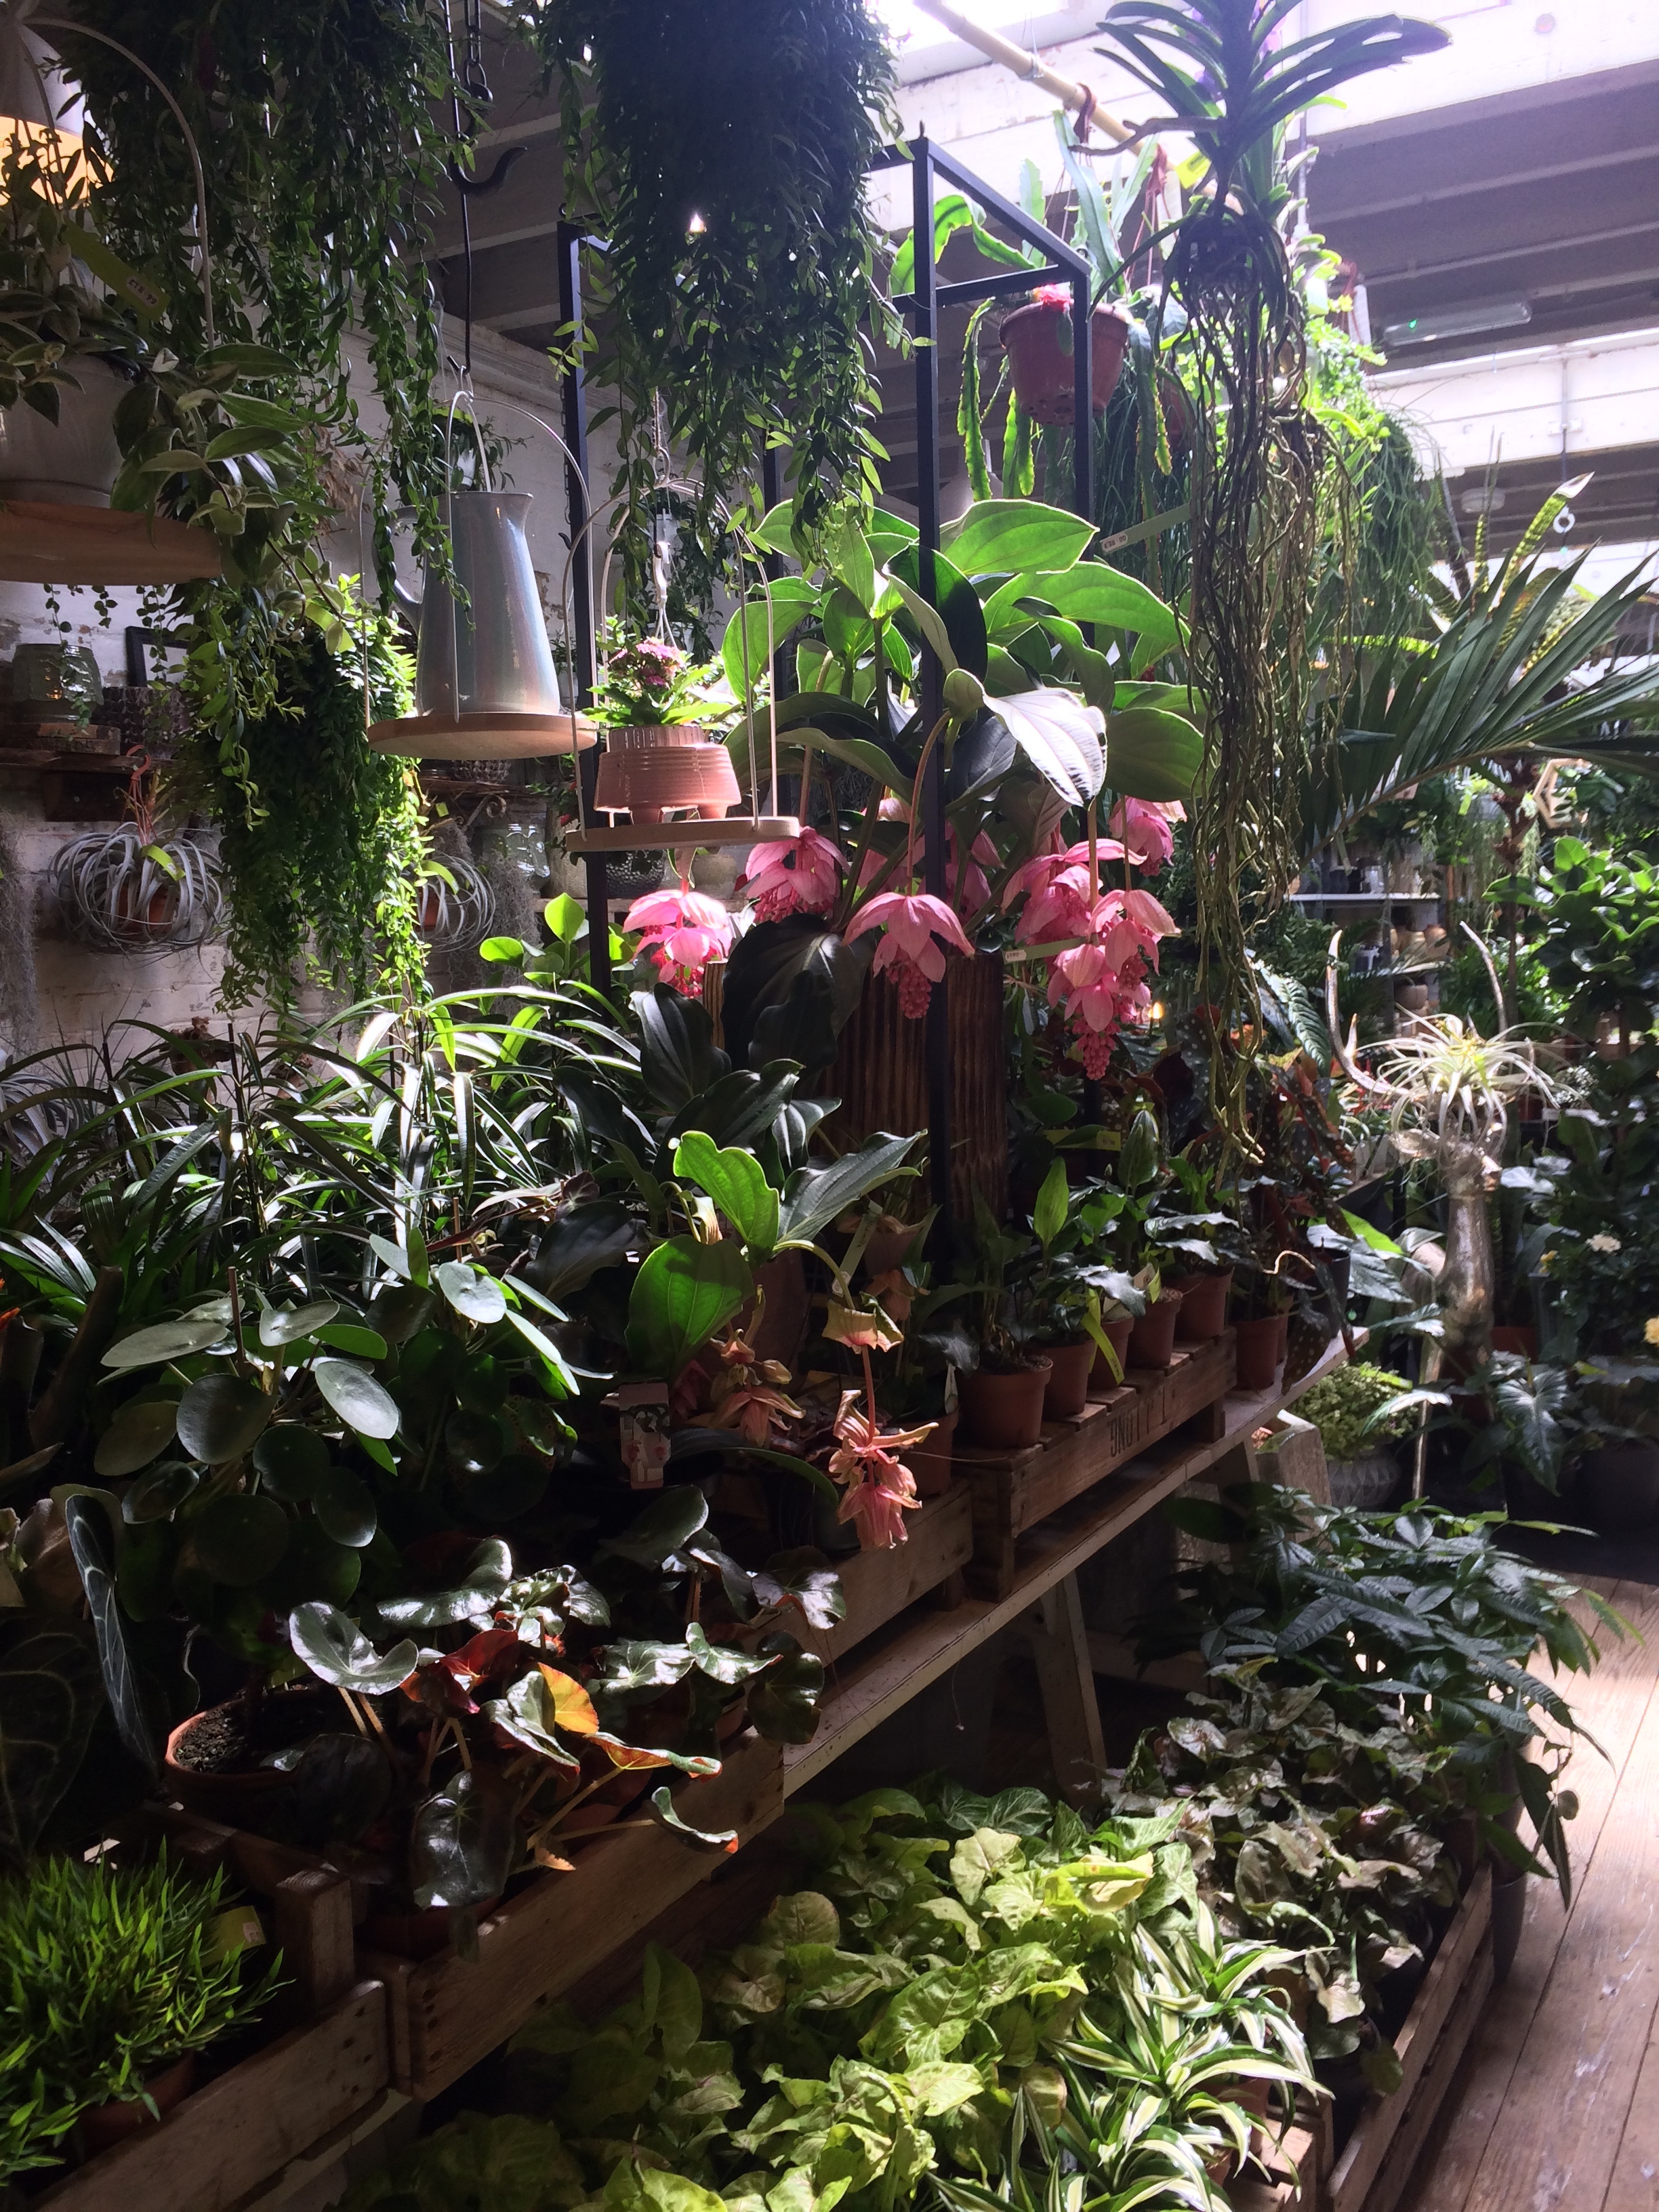 Plants on display at N1.